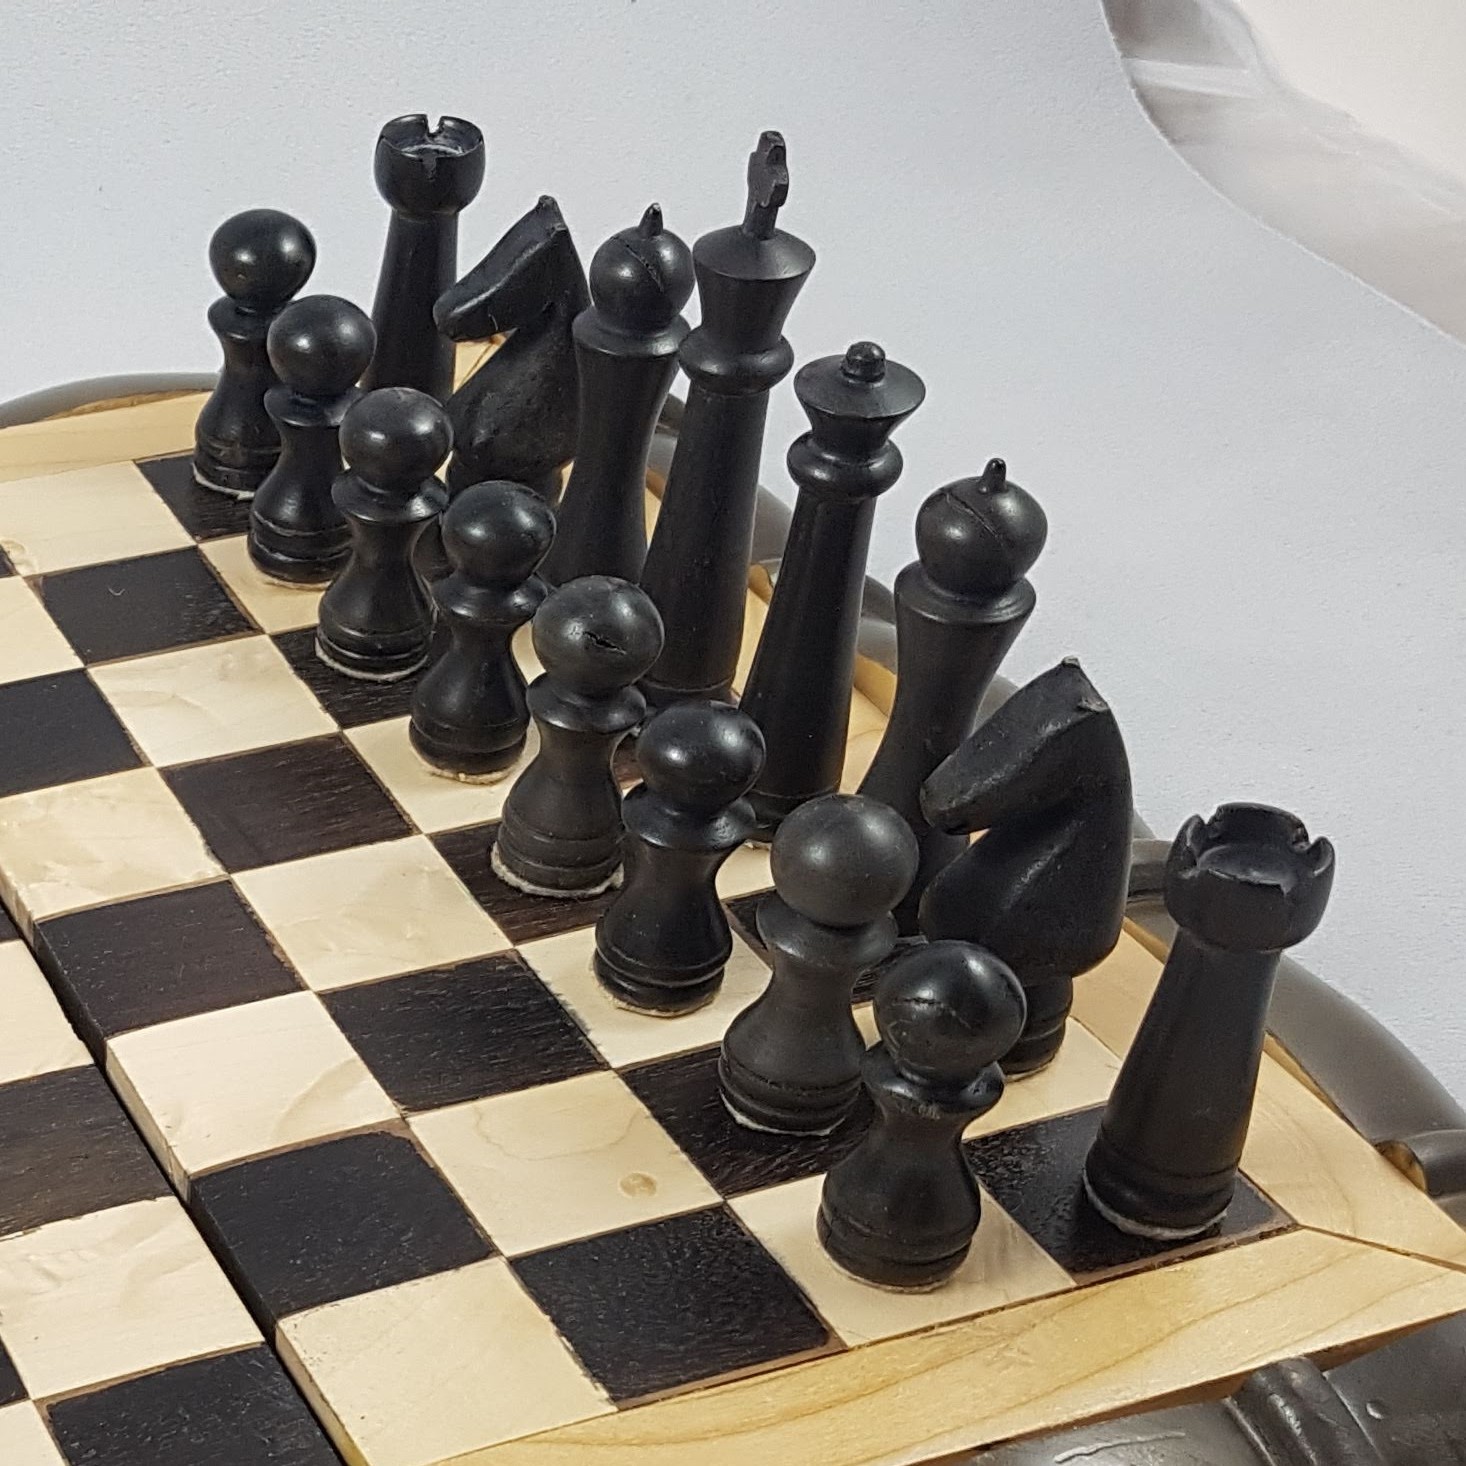 Dark chess pieces